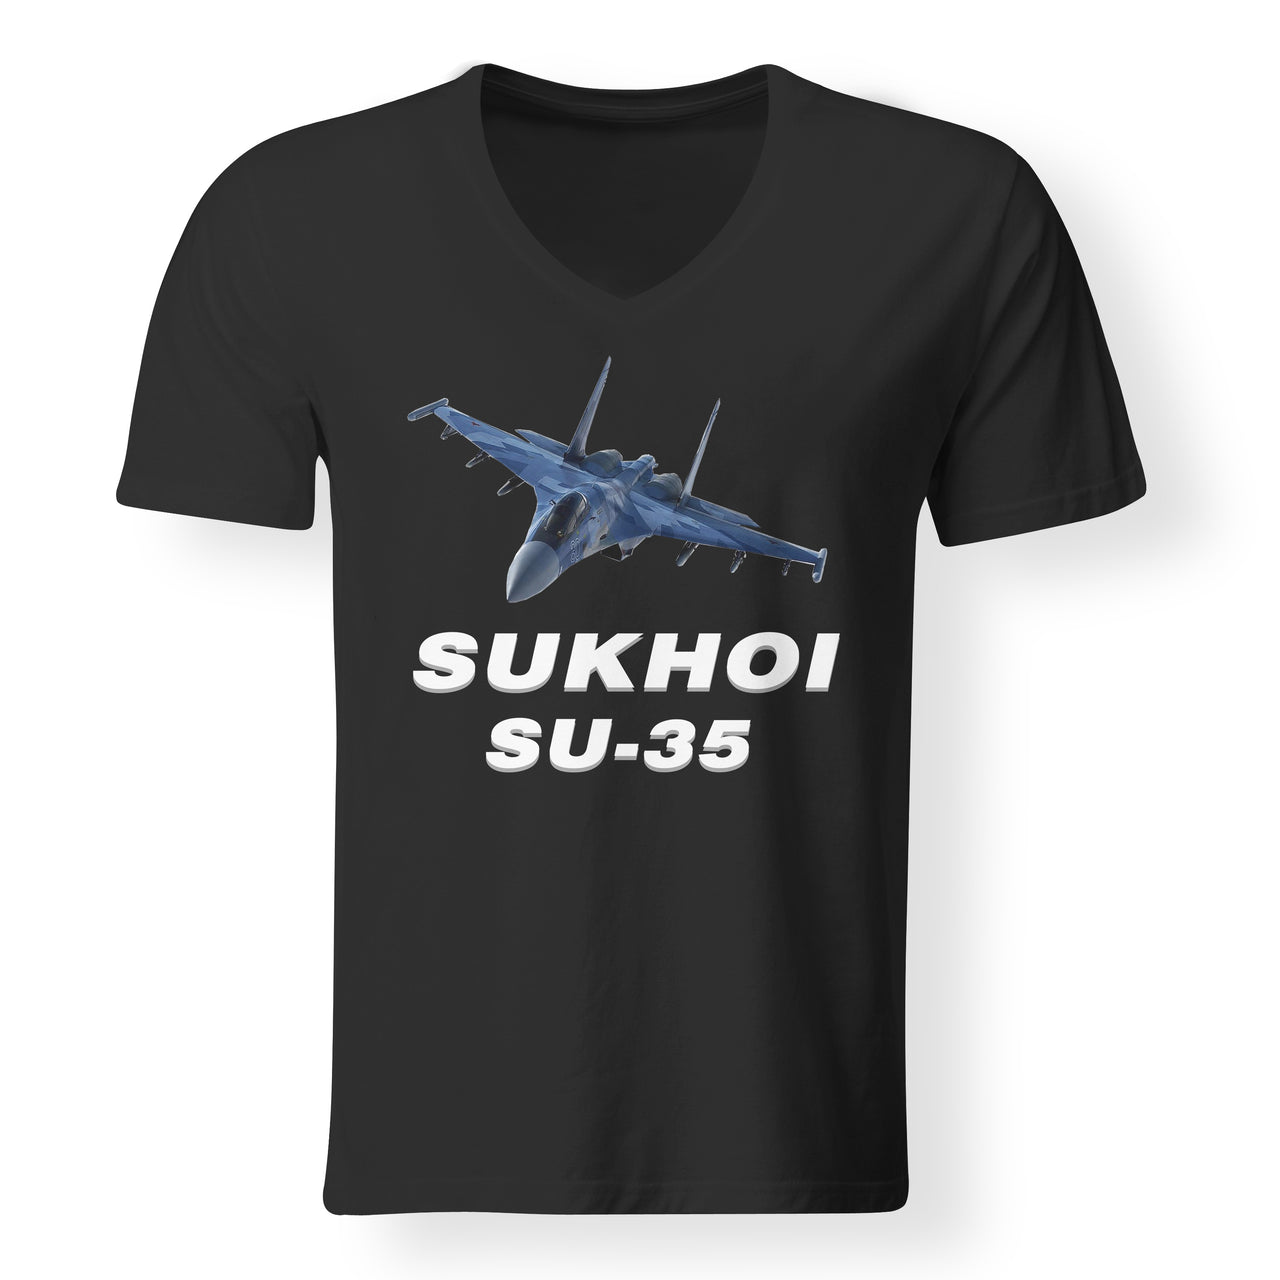 The Sukhoi SU-35 Designed V-Neck T-Shirts